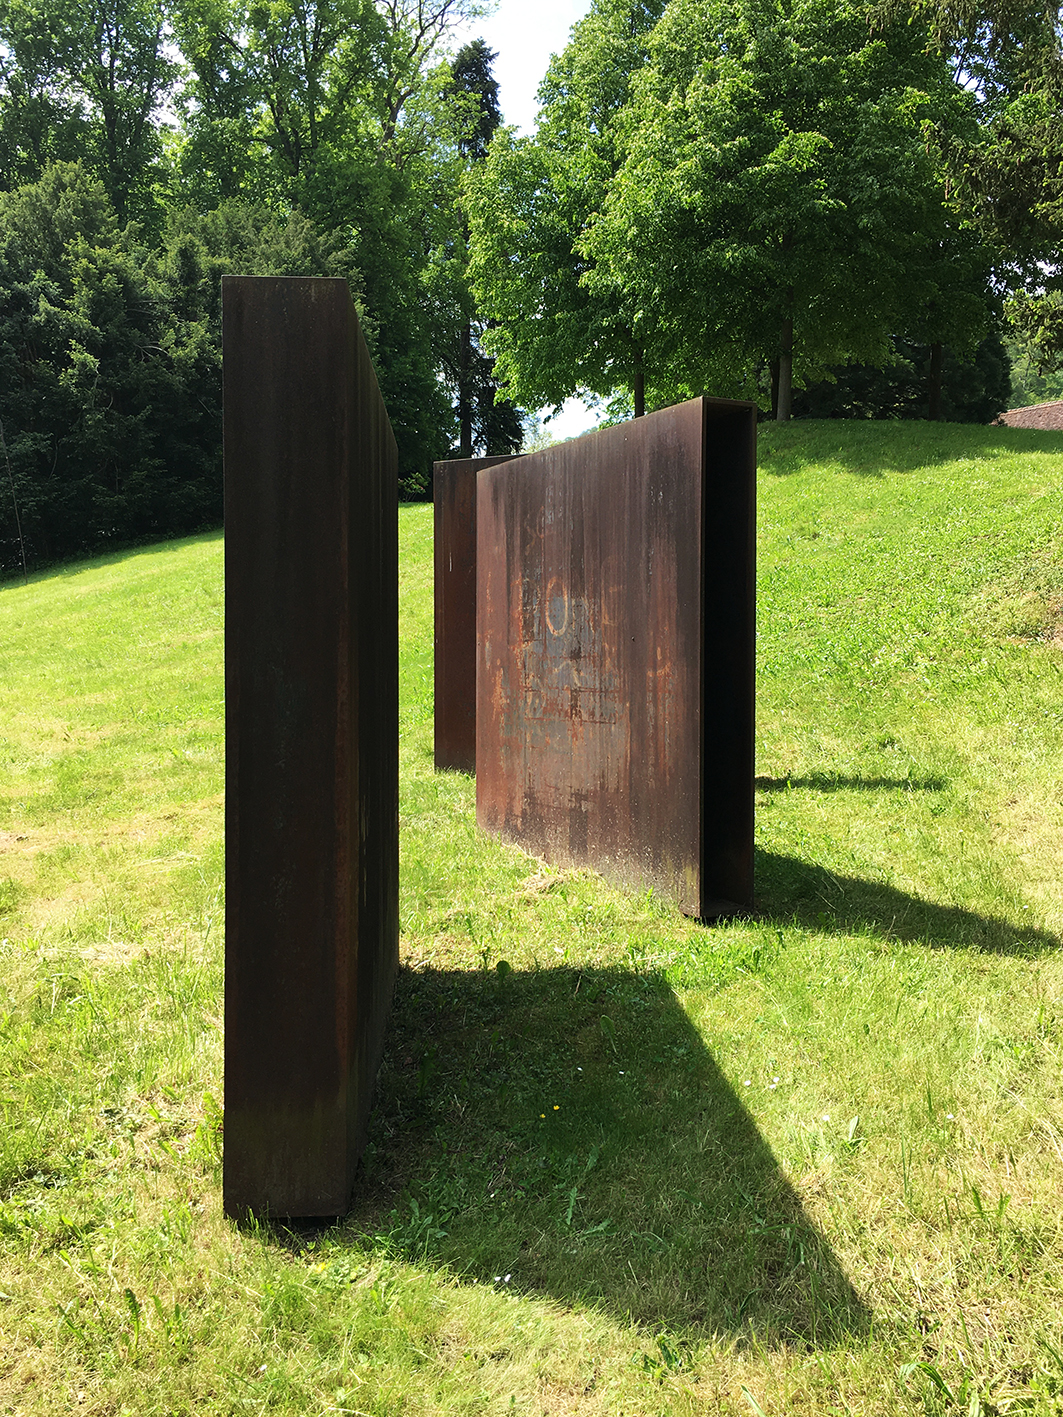 Die Eisen-Plasik von Claudio Magoni ist ein Beispiel der Minimal-Art und steht als Spurensicherung zeitgenössischer Kunst im histrischen Umfeld des Schlosspark Ebenrain in CH-Sissach BL. Sie ist Teil der Sammlung Kunst im öffentlichen Raum des Kanton Basel-Landschaft.